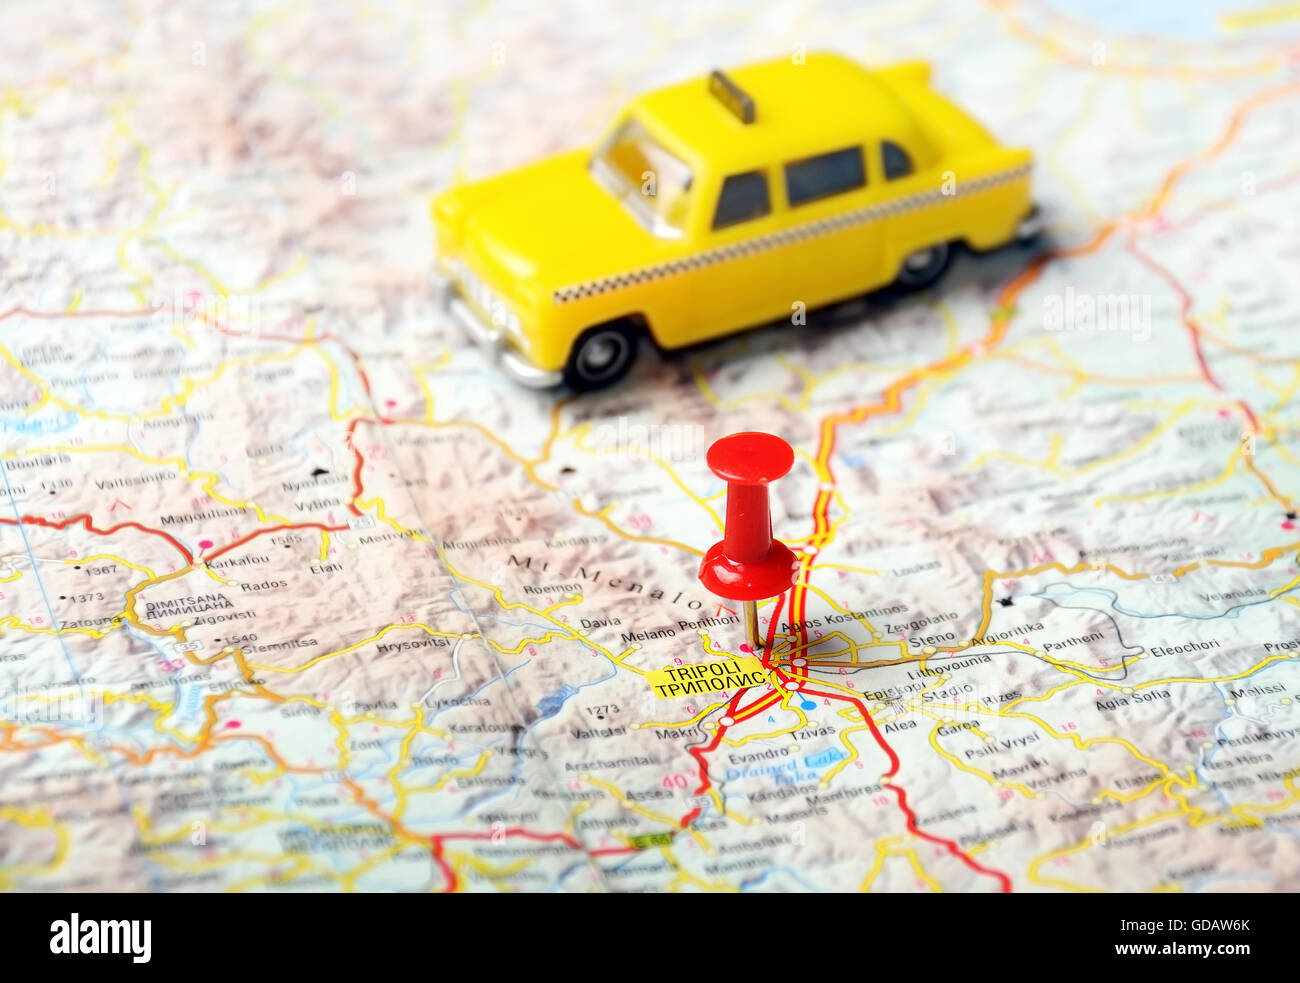 Nahaufnahme von Tripoli, Griechenland Karte mit roten Stift und ein Taxi - Reisekonzept Stockfoto